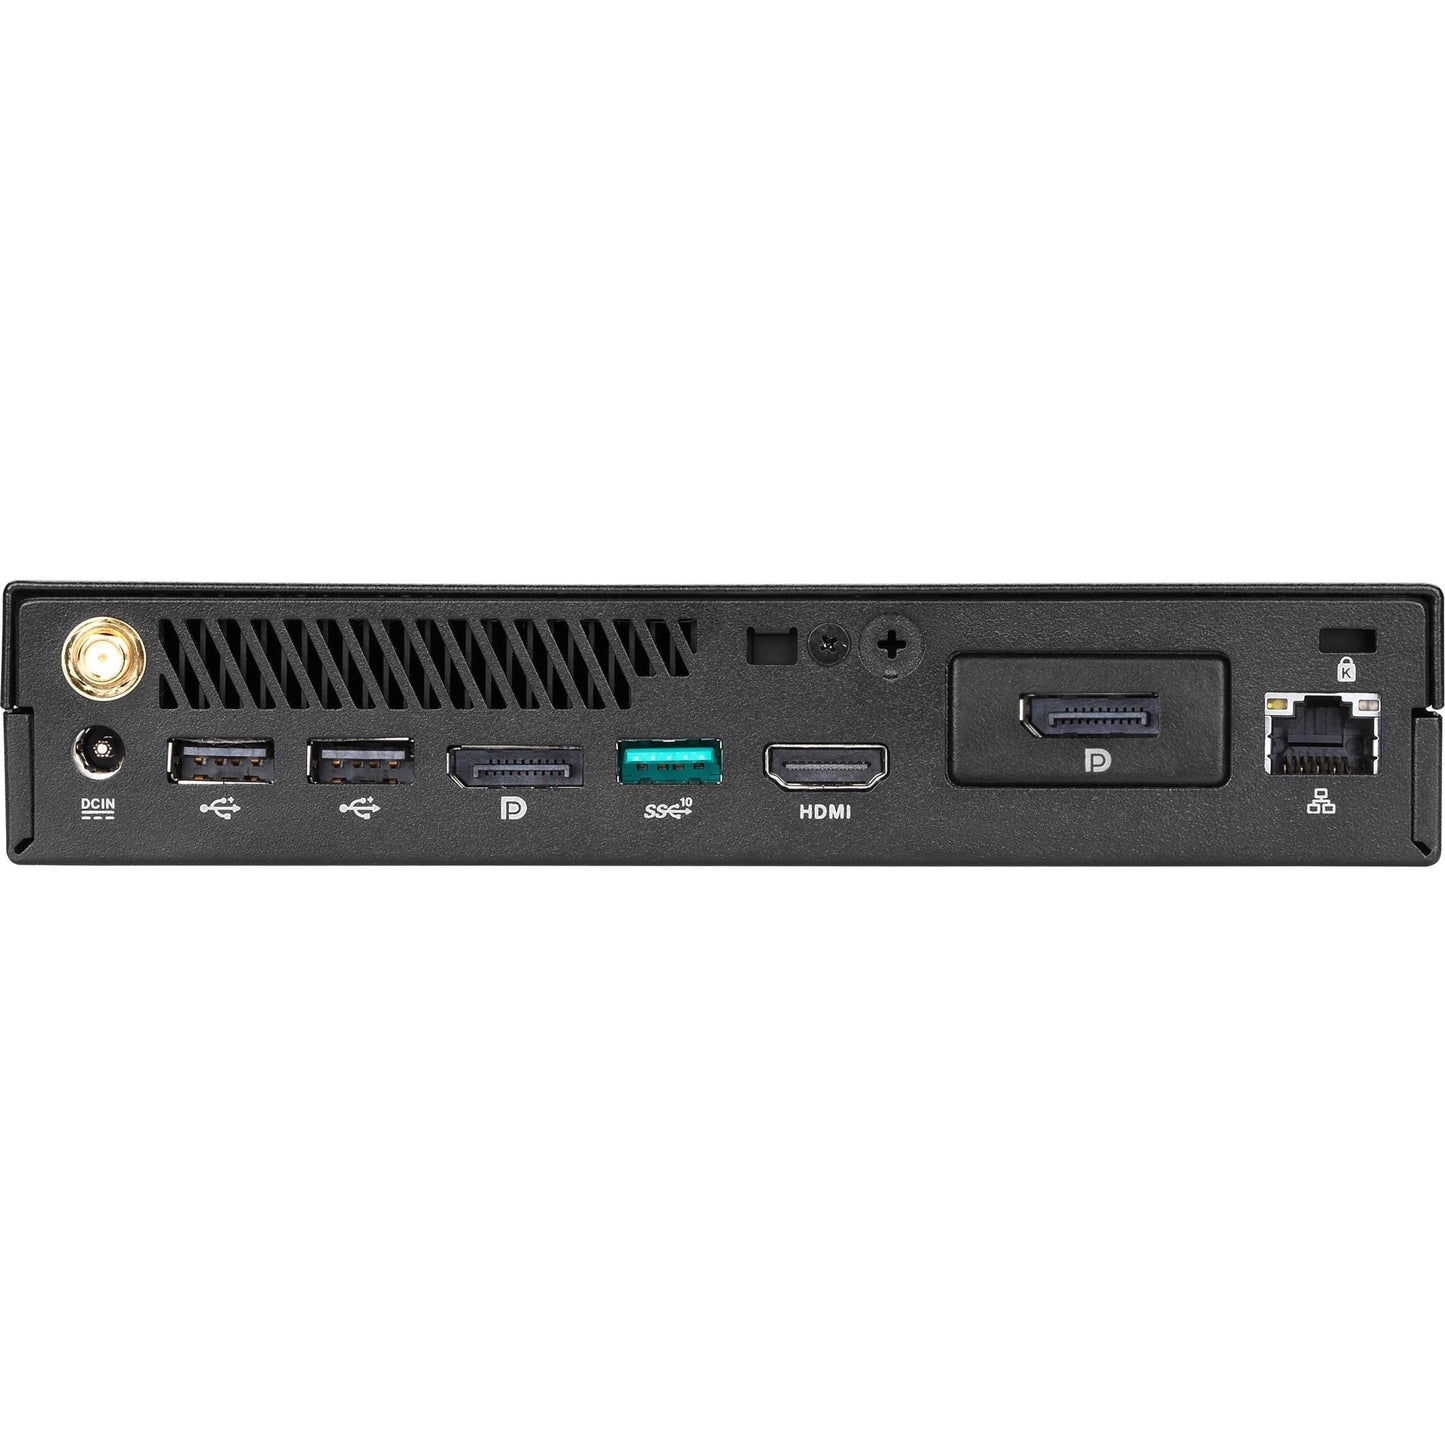 Asus miniPC PB60-B3043ZC Desktop Computer - Intel - 4 GB RAM DDR4 SDRAM - 500 GB HDD - Mini PC - Black